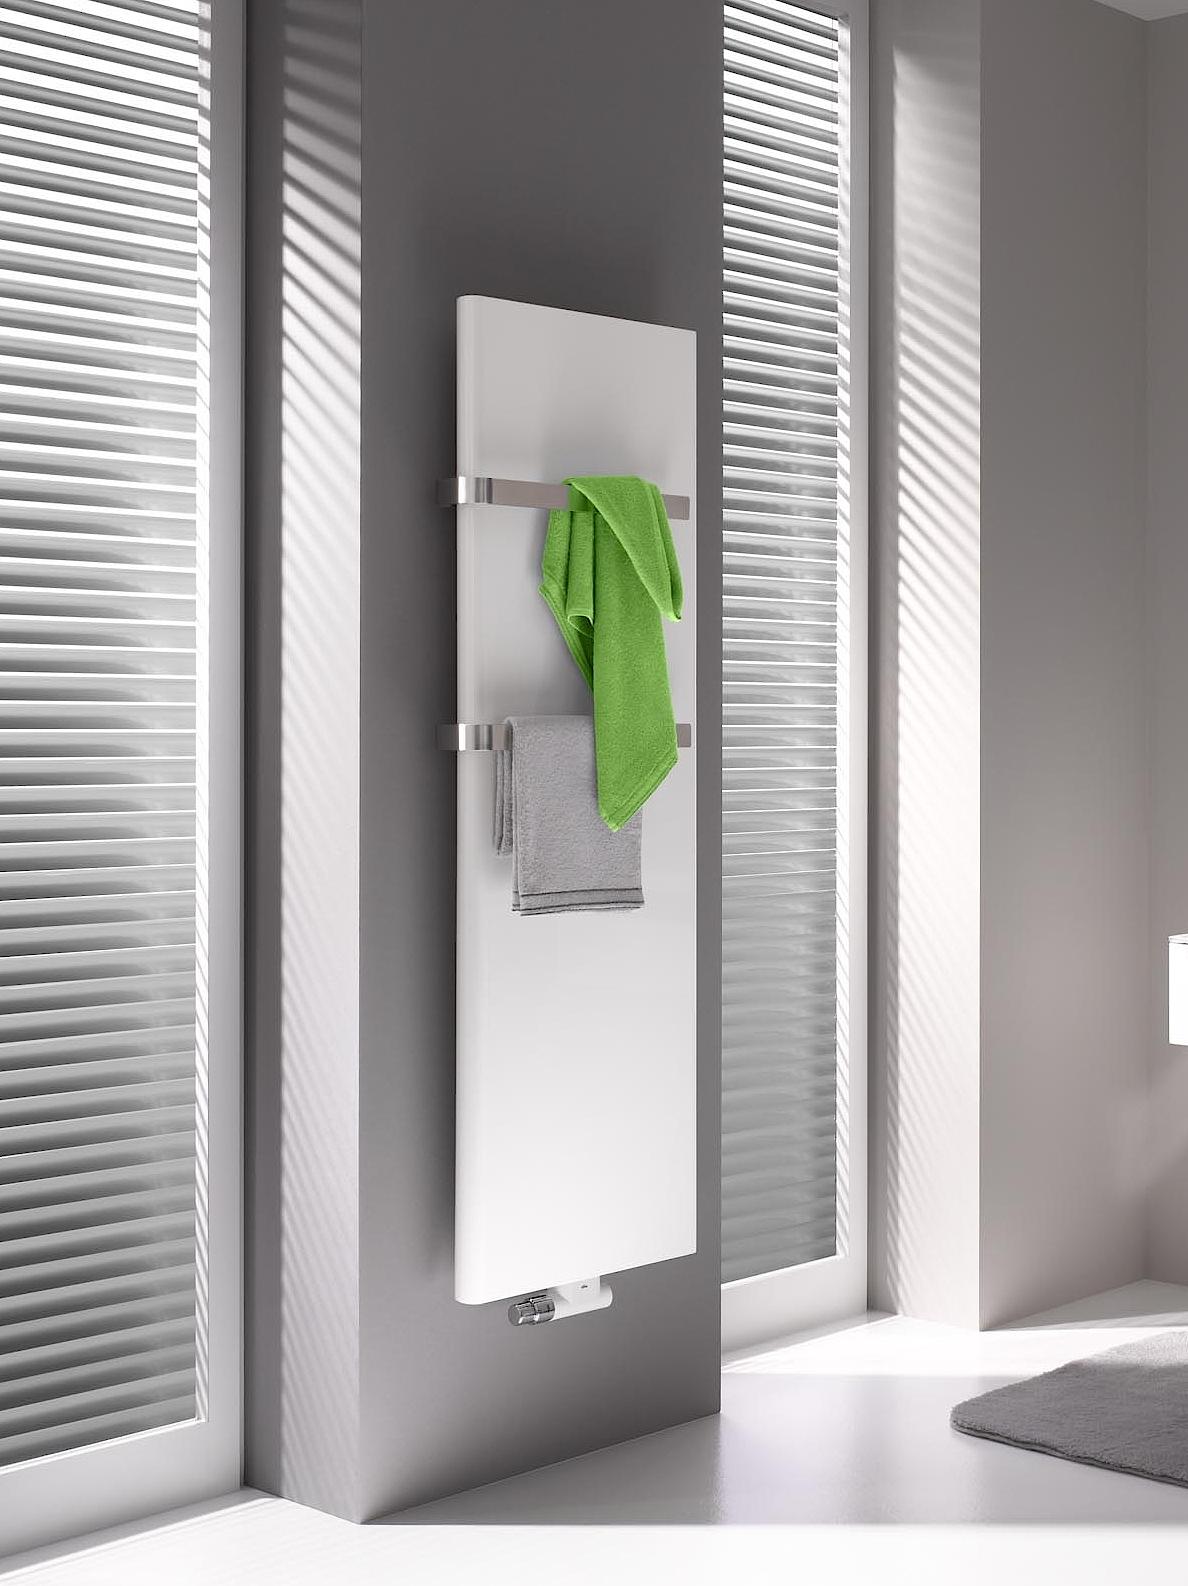 Unikalios x2 technologijos dėka „Kermi Pateo“ išskirtinio dizaino radiatorius – rankšluosčių džiovintuvas yra pavyzdinis galingumo ir energijos vartojimo efektyvumo požiūriu.